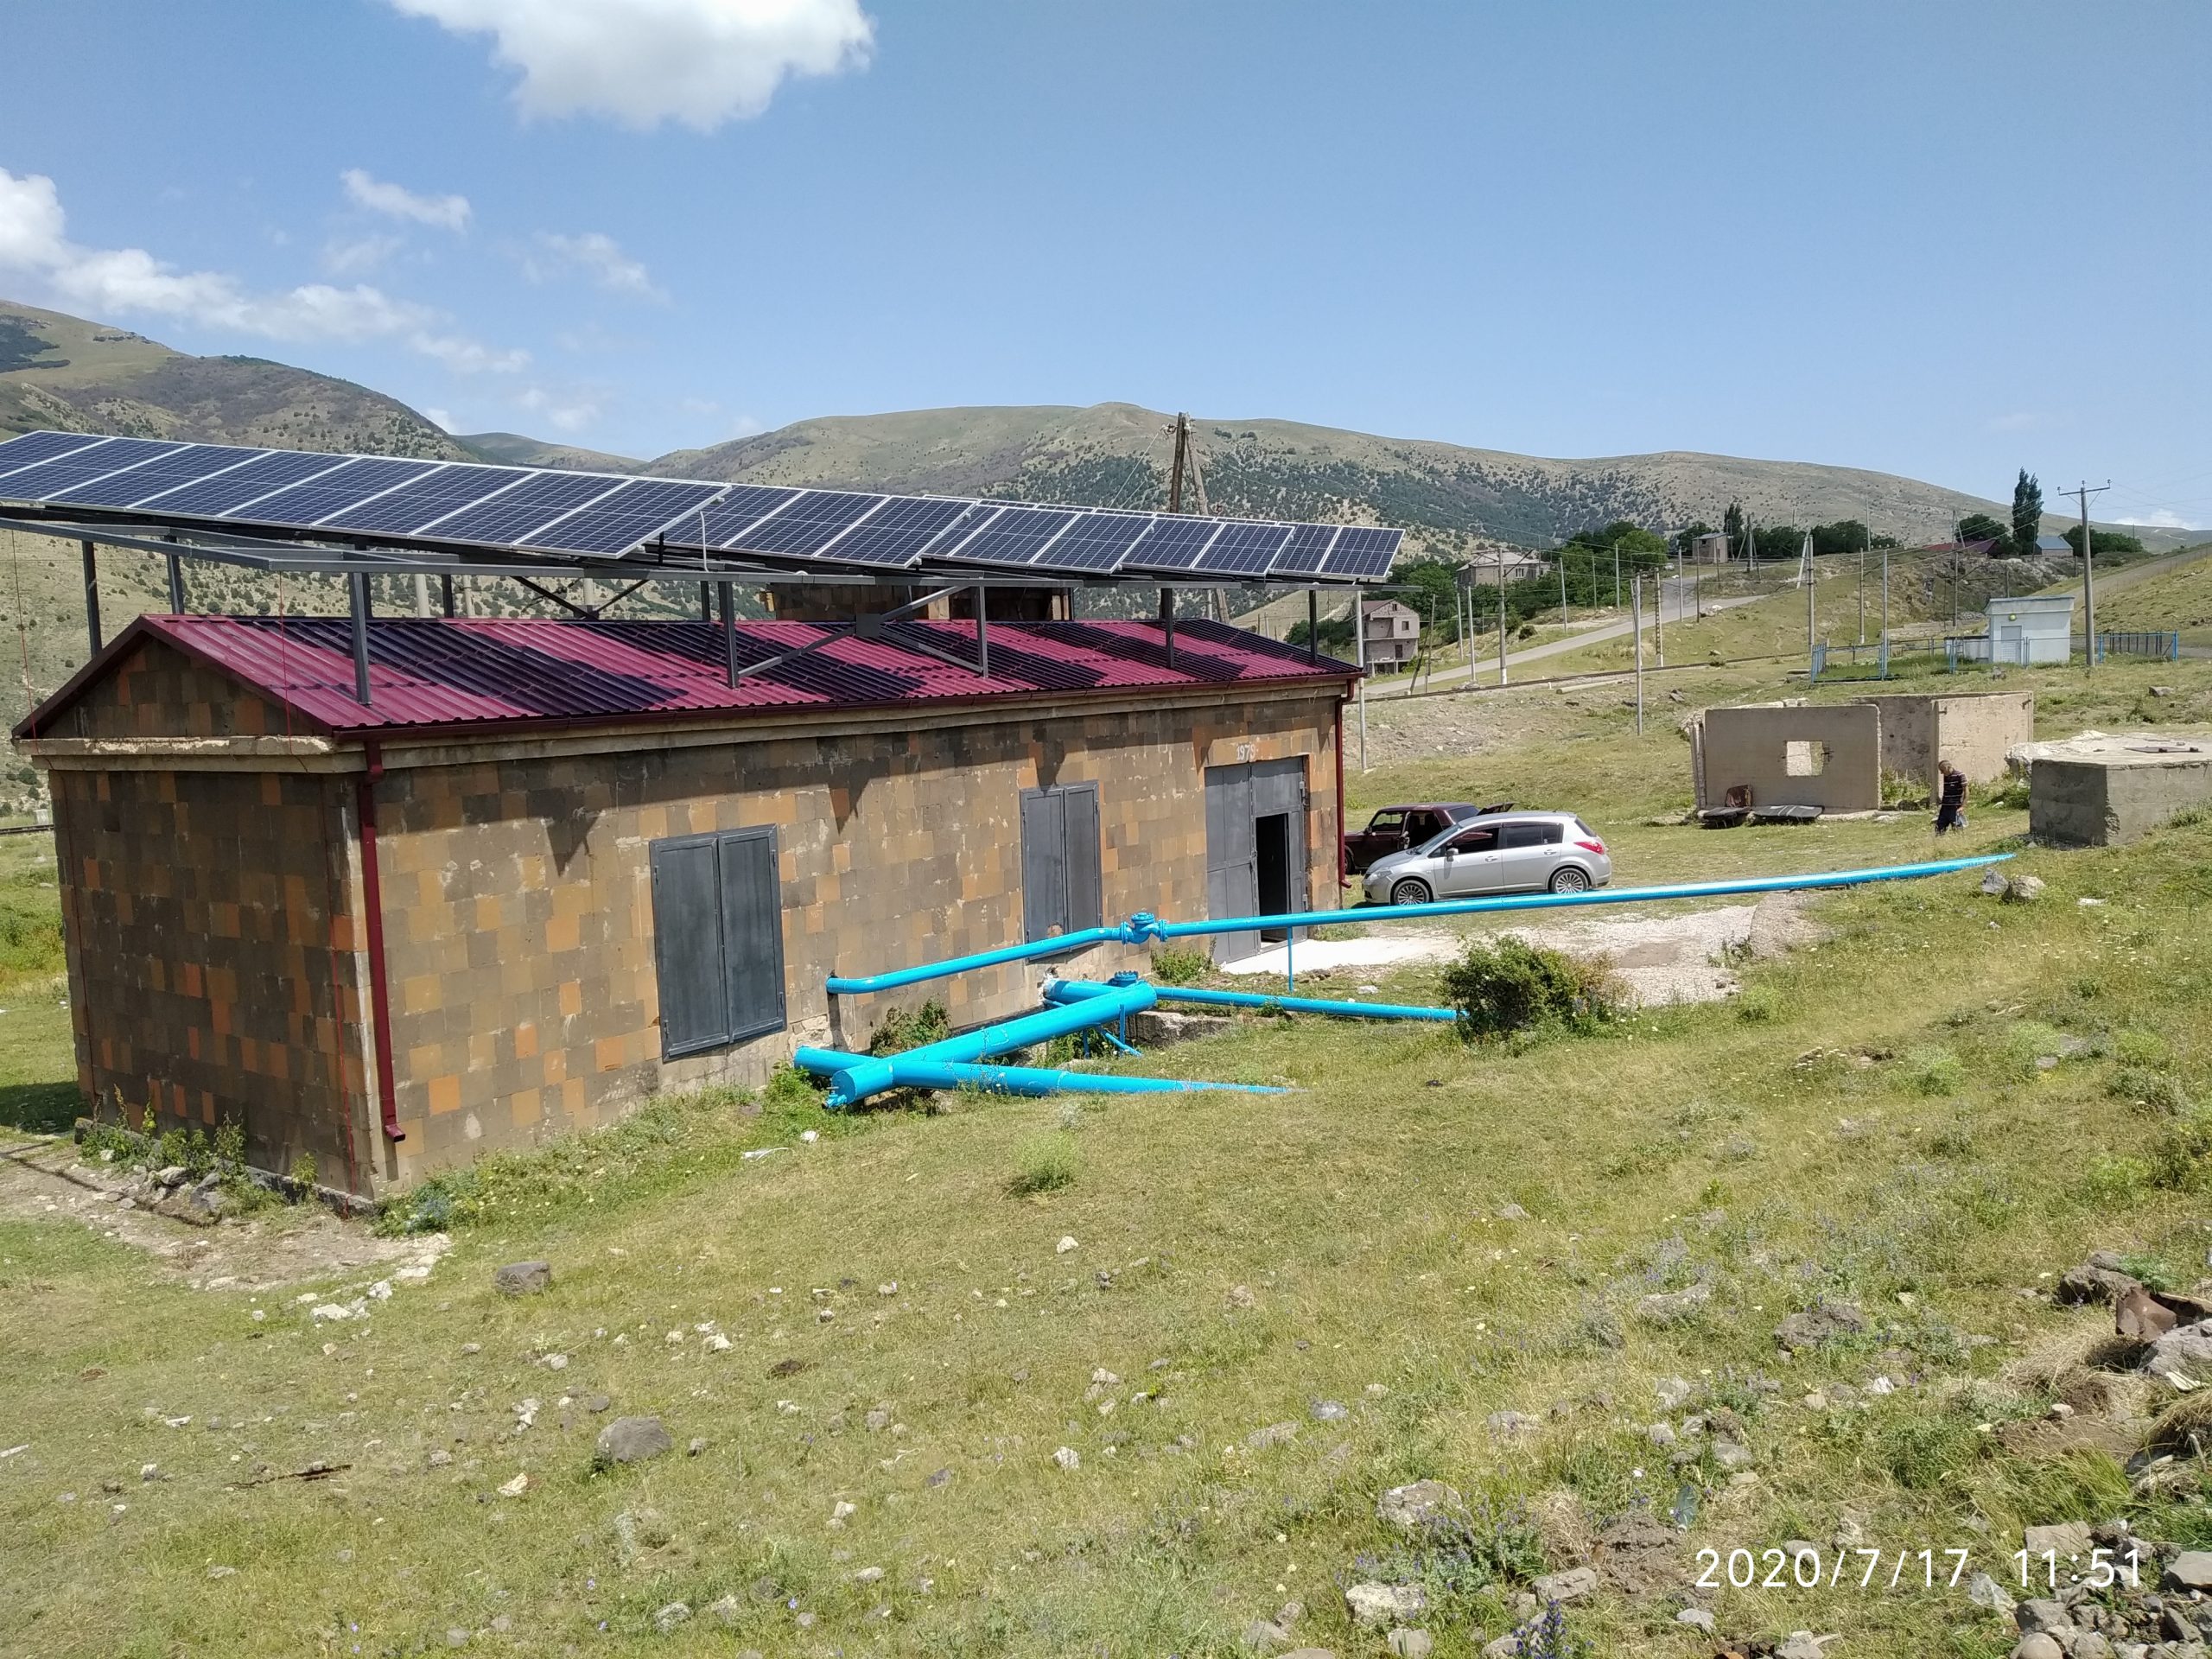 (Español) Culmina Con éxito Proyecto Del Centro De Energía En Armenia